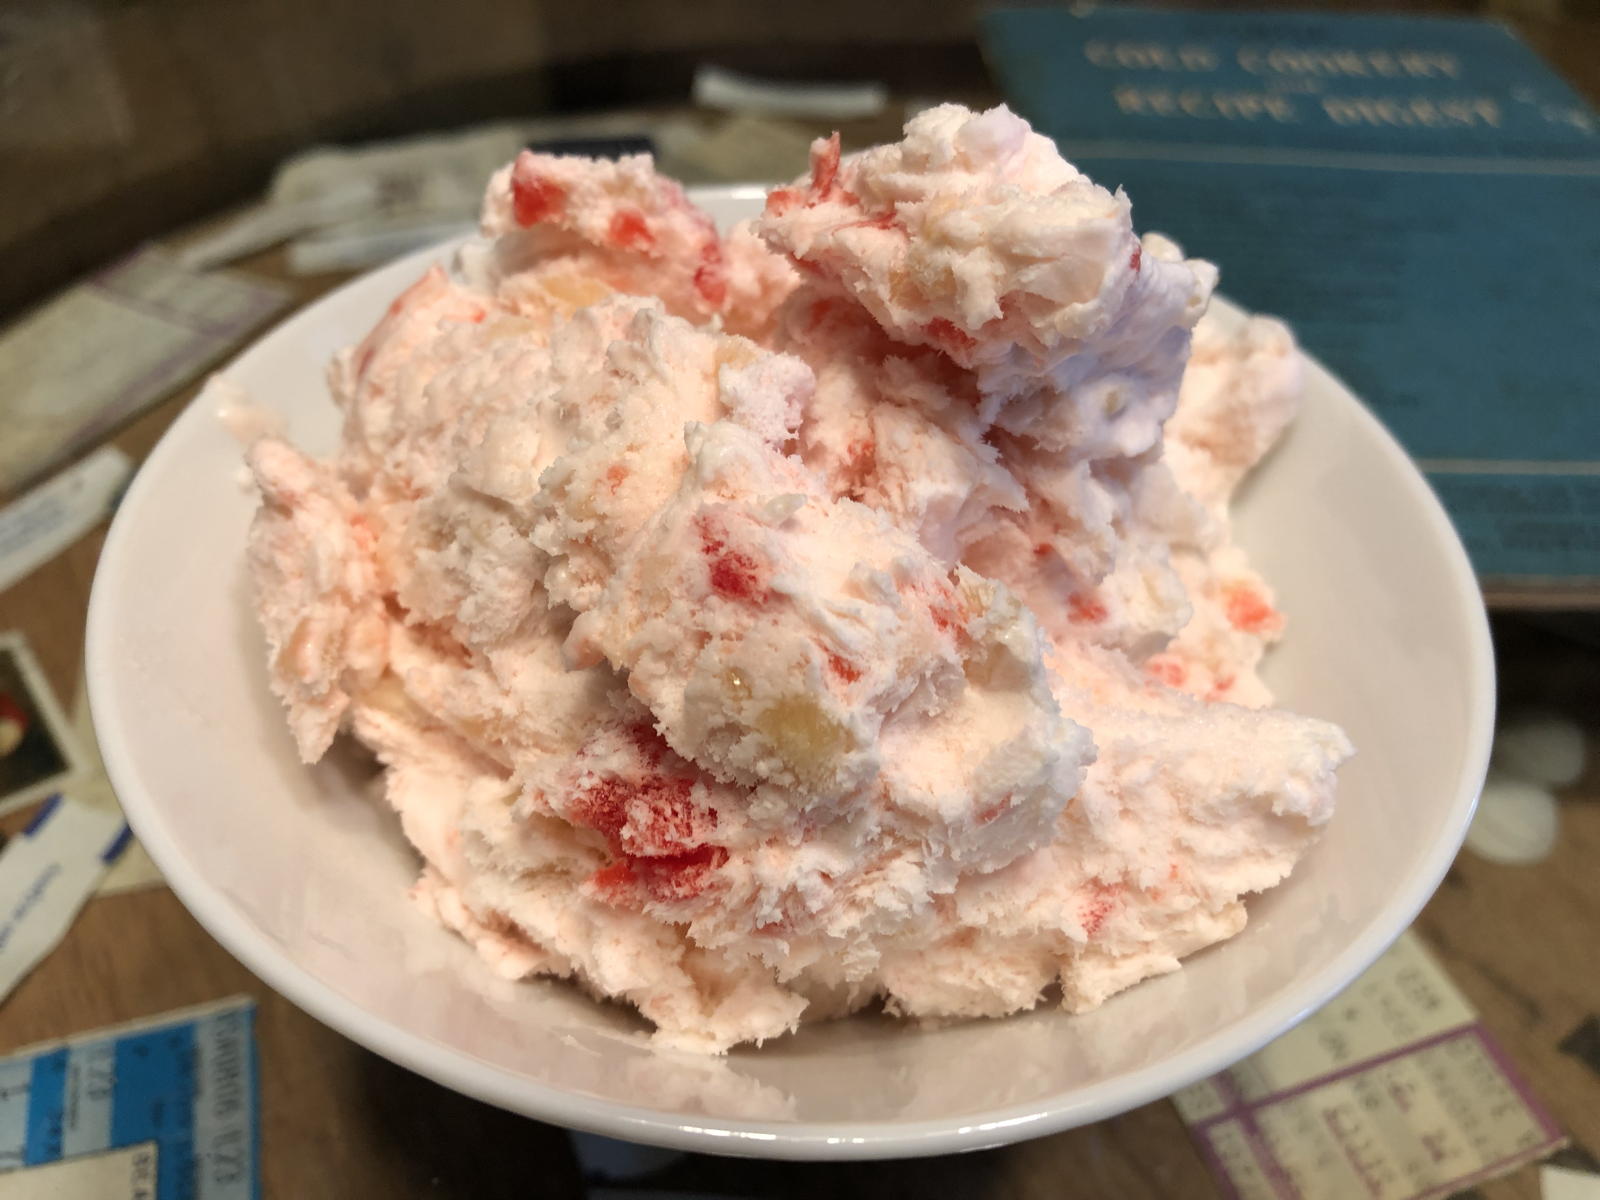 Norge cherry-almond ice cream